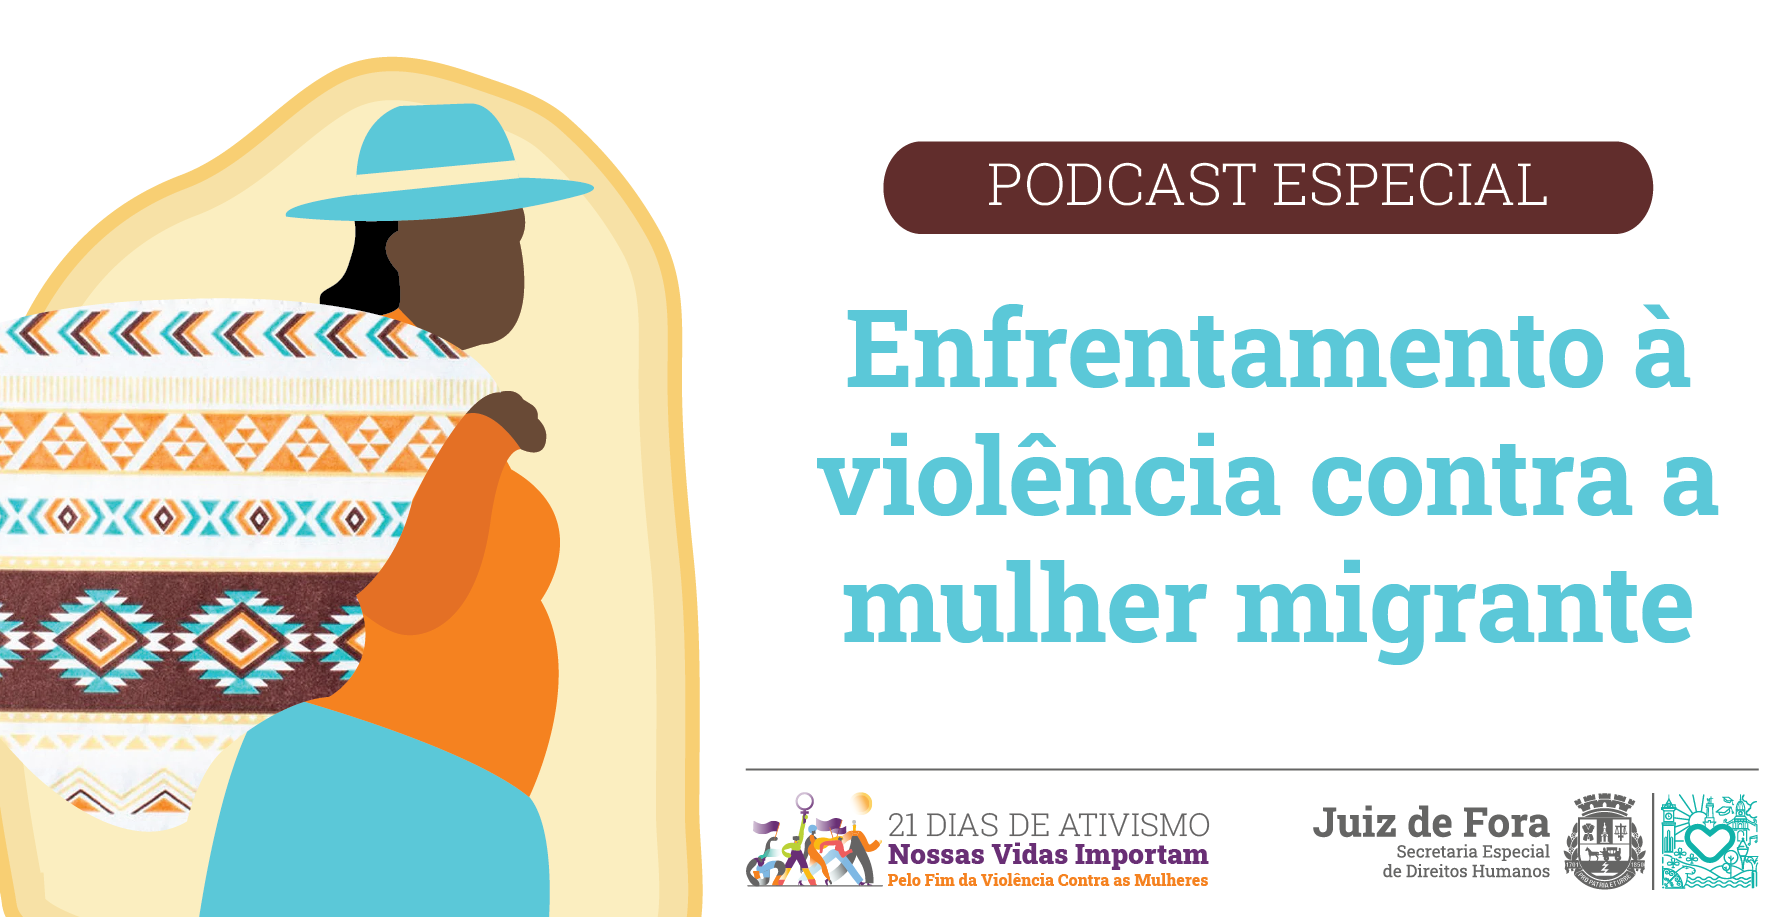 Portal de Notícias PJF | "Nossas vidas importam": Secom lança podcast sobre a mulher migrante em Juiz de Fora | SECOM - 1/12/2021